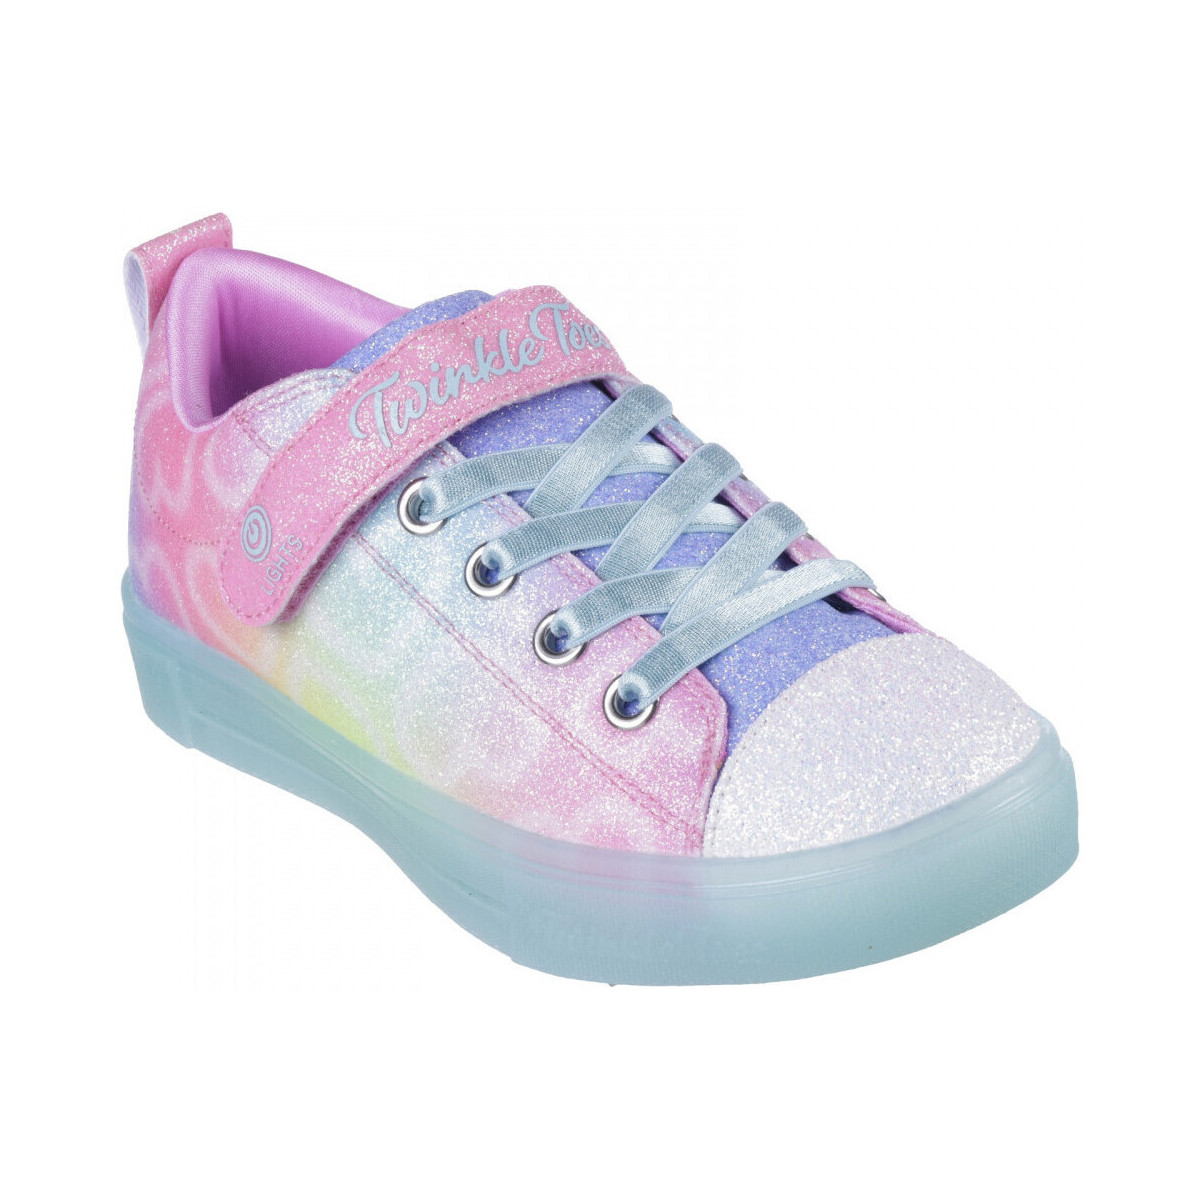 Schoenen Kinderen Sneakers Skechers Twinkle sparks ice - dreamsic Multicolour